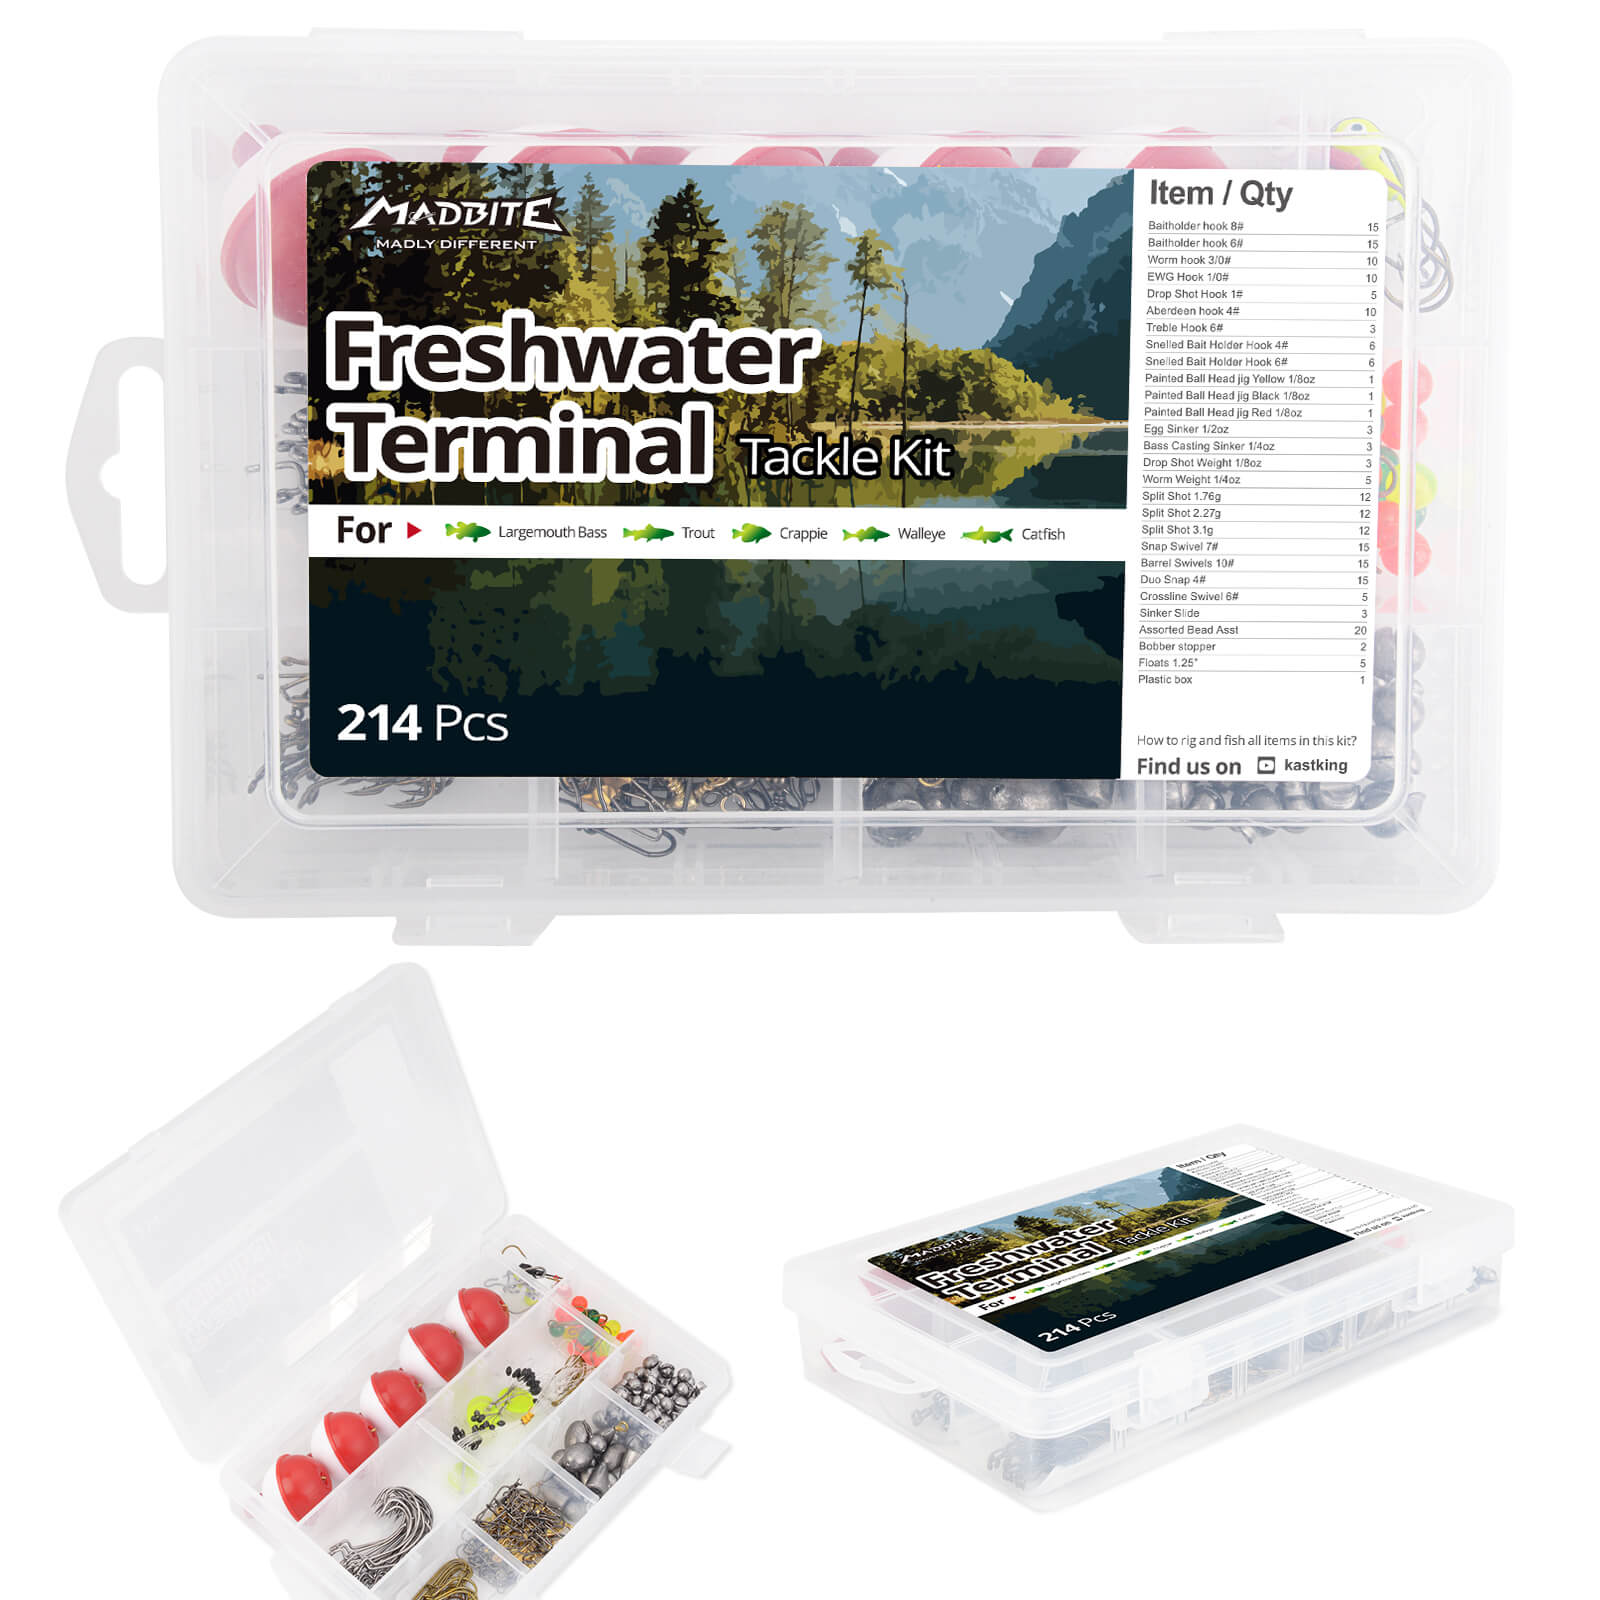 MadBite Freshwater Terminal Tackle Kits